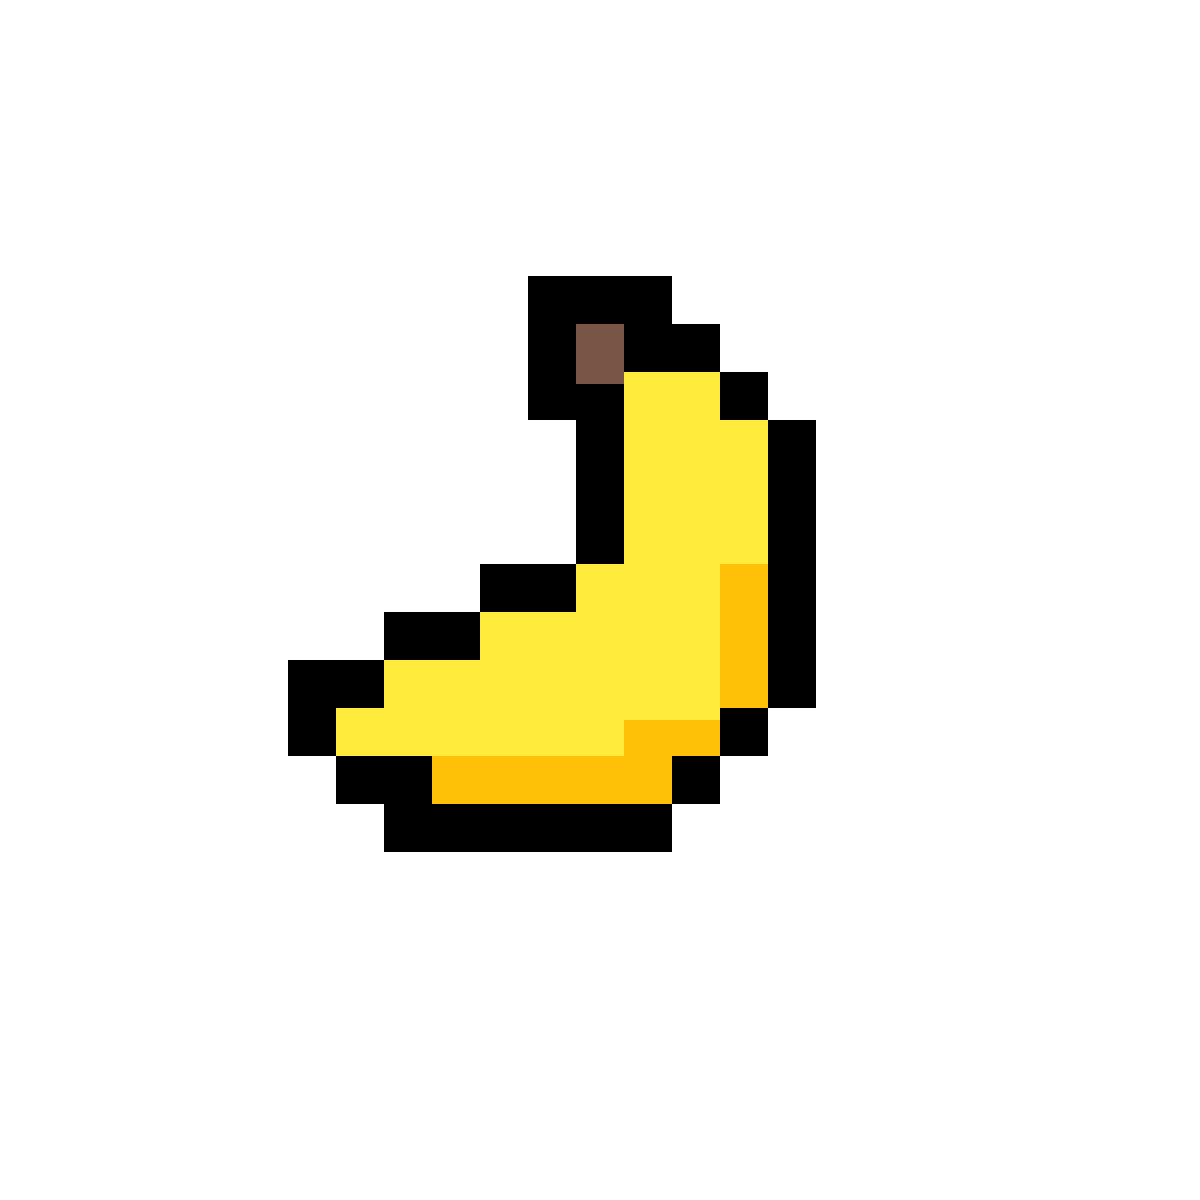 Банан пиксель арт